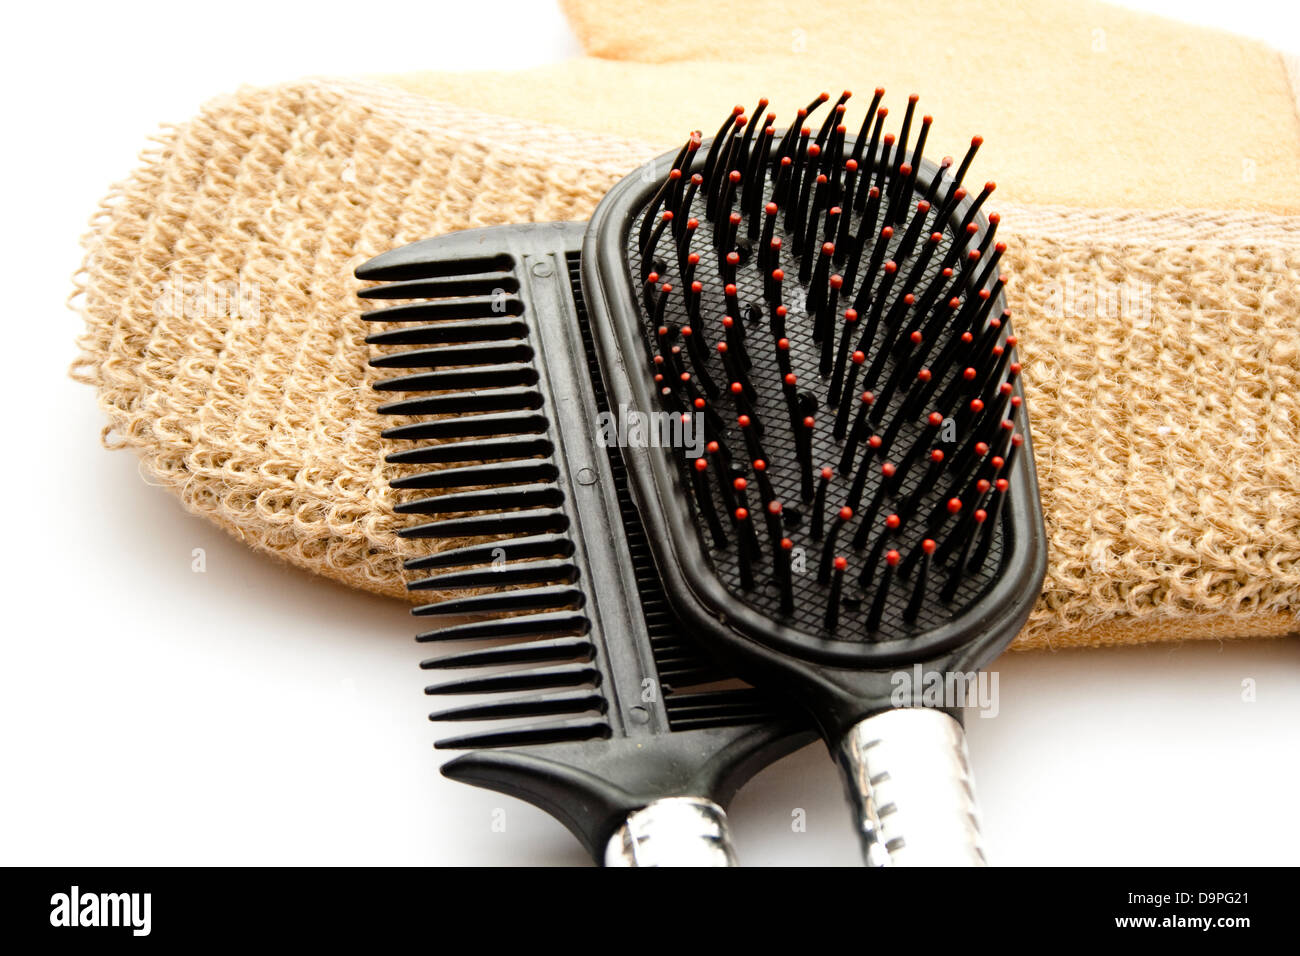 Spazzola per capelli diversi sul guanto massaggio Foto Stock